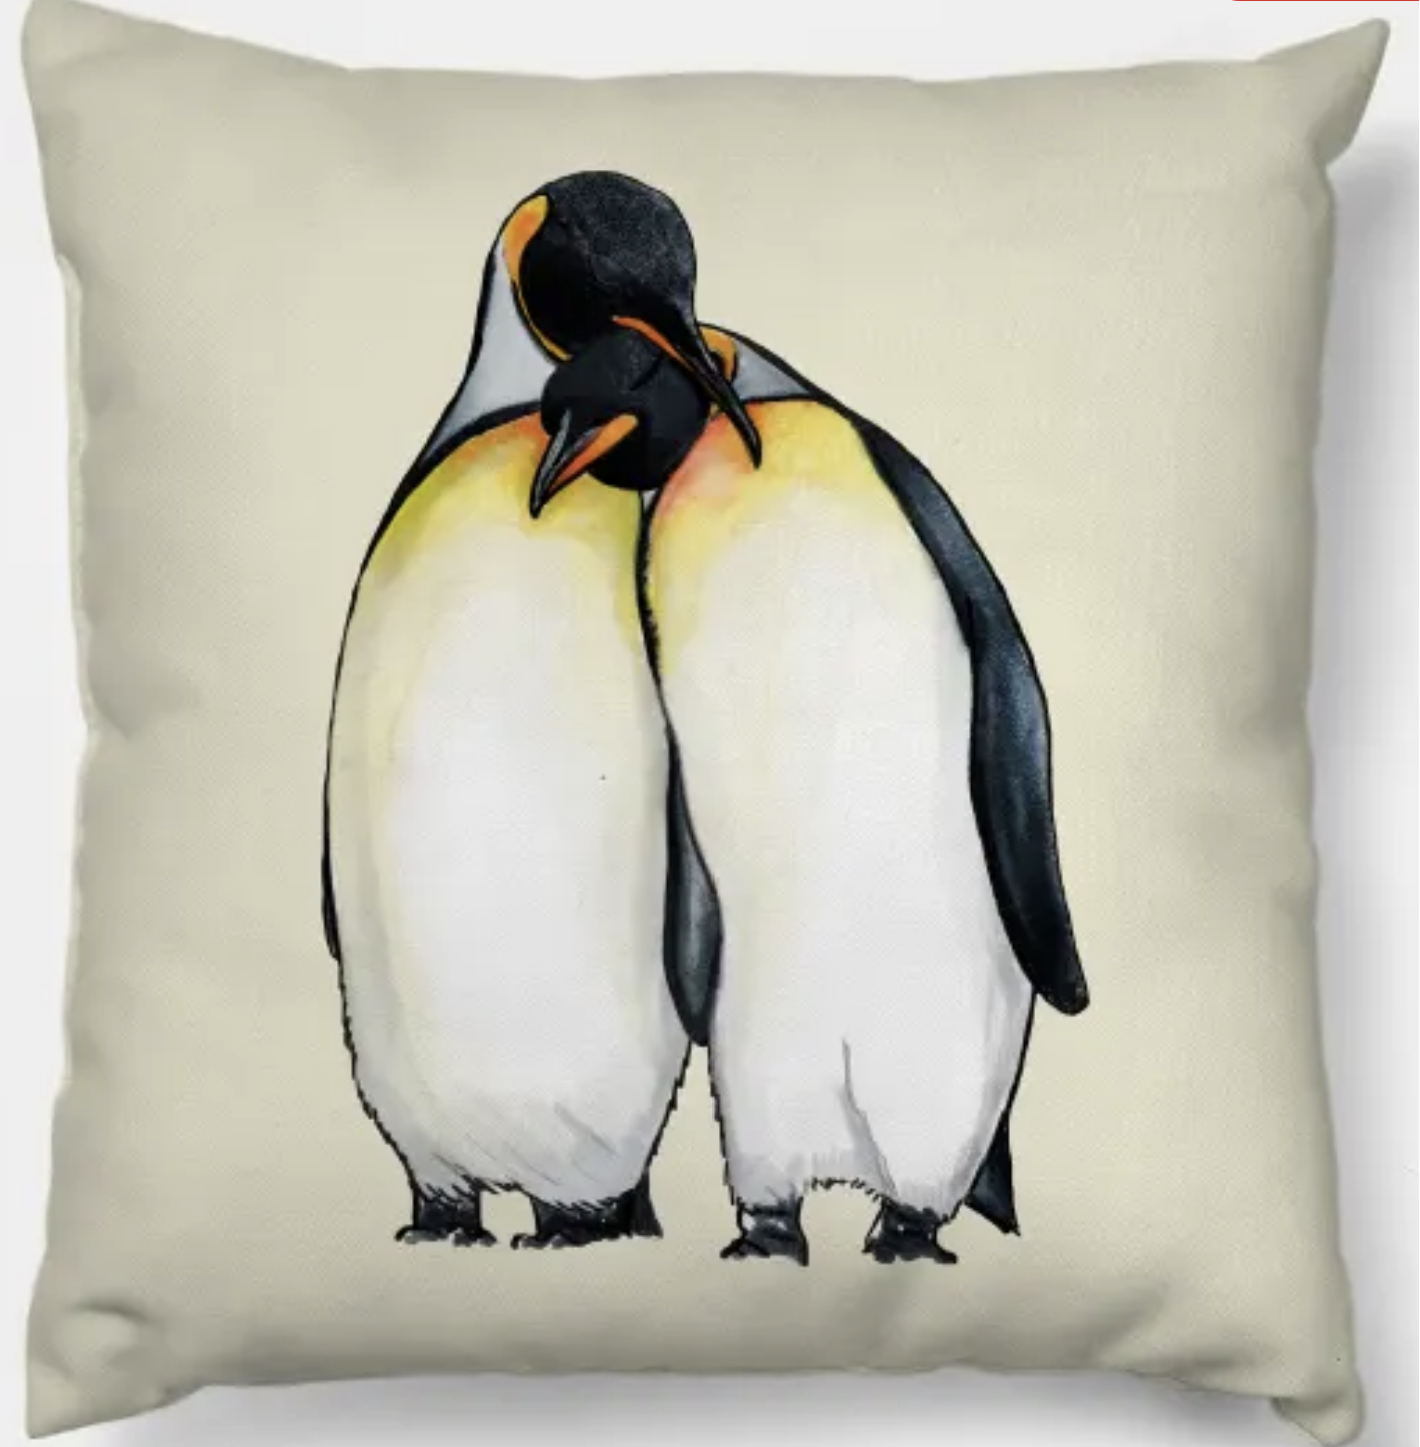 Penguins Throw Pillow